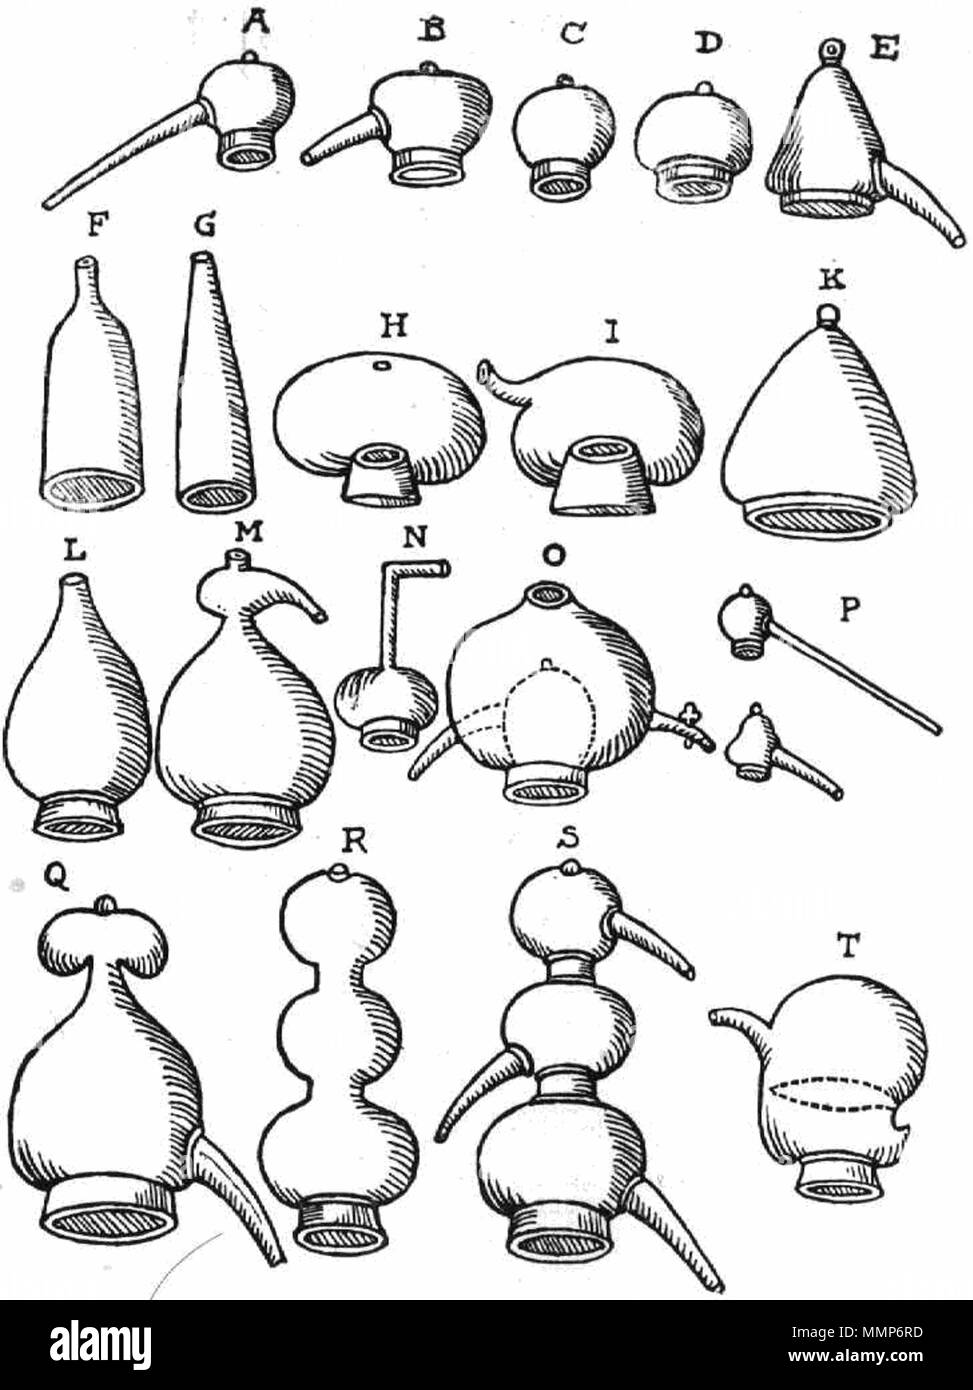 Englisch: Zeichnungen von alembics von einer Renaissance der Chemie Buch  von Andreas Libavius. Diese waren Glas und Keramik Hauben für Schiffe zur  Destillation verwendet. Die Destillation Gefäß (mit der Bezeichnung  "CUCURBIT')